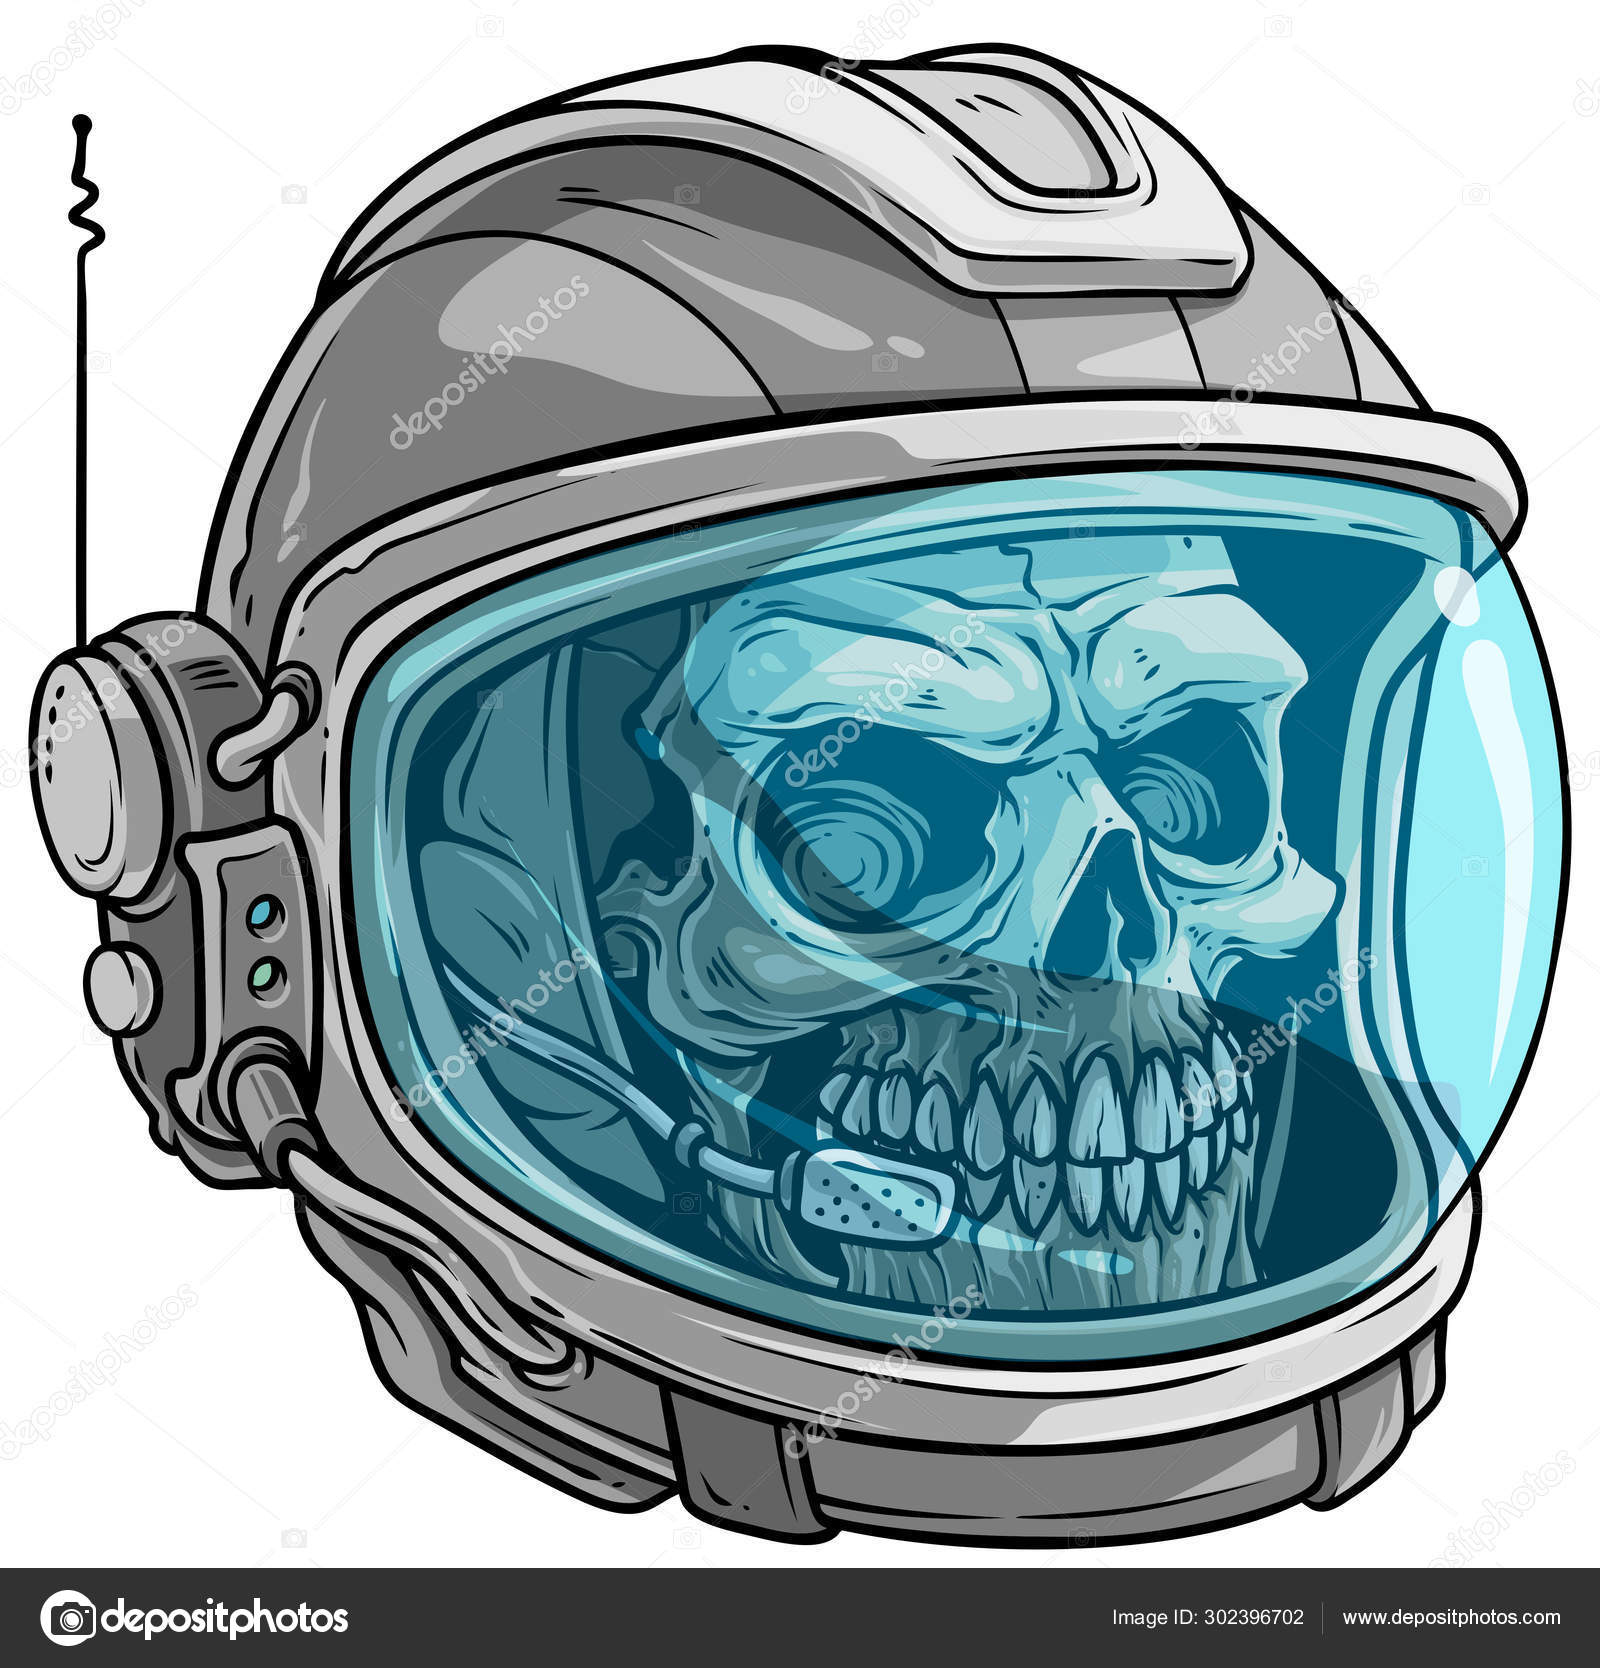 Casco De Astronauta Realista Vector 3d, Máscara De Cosmonauta Con